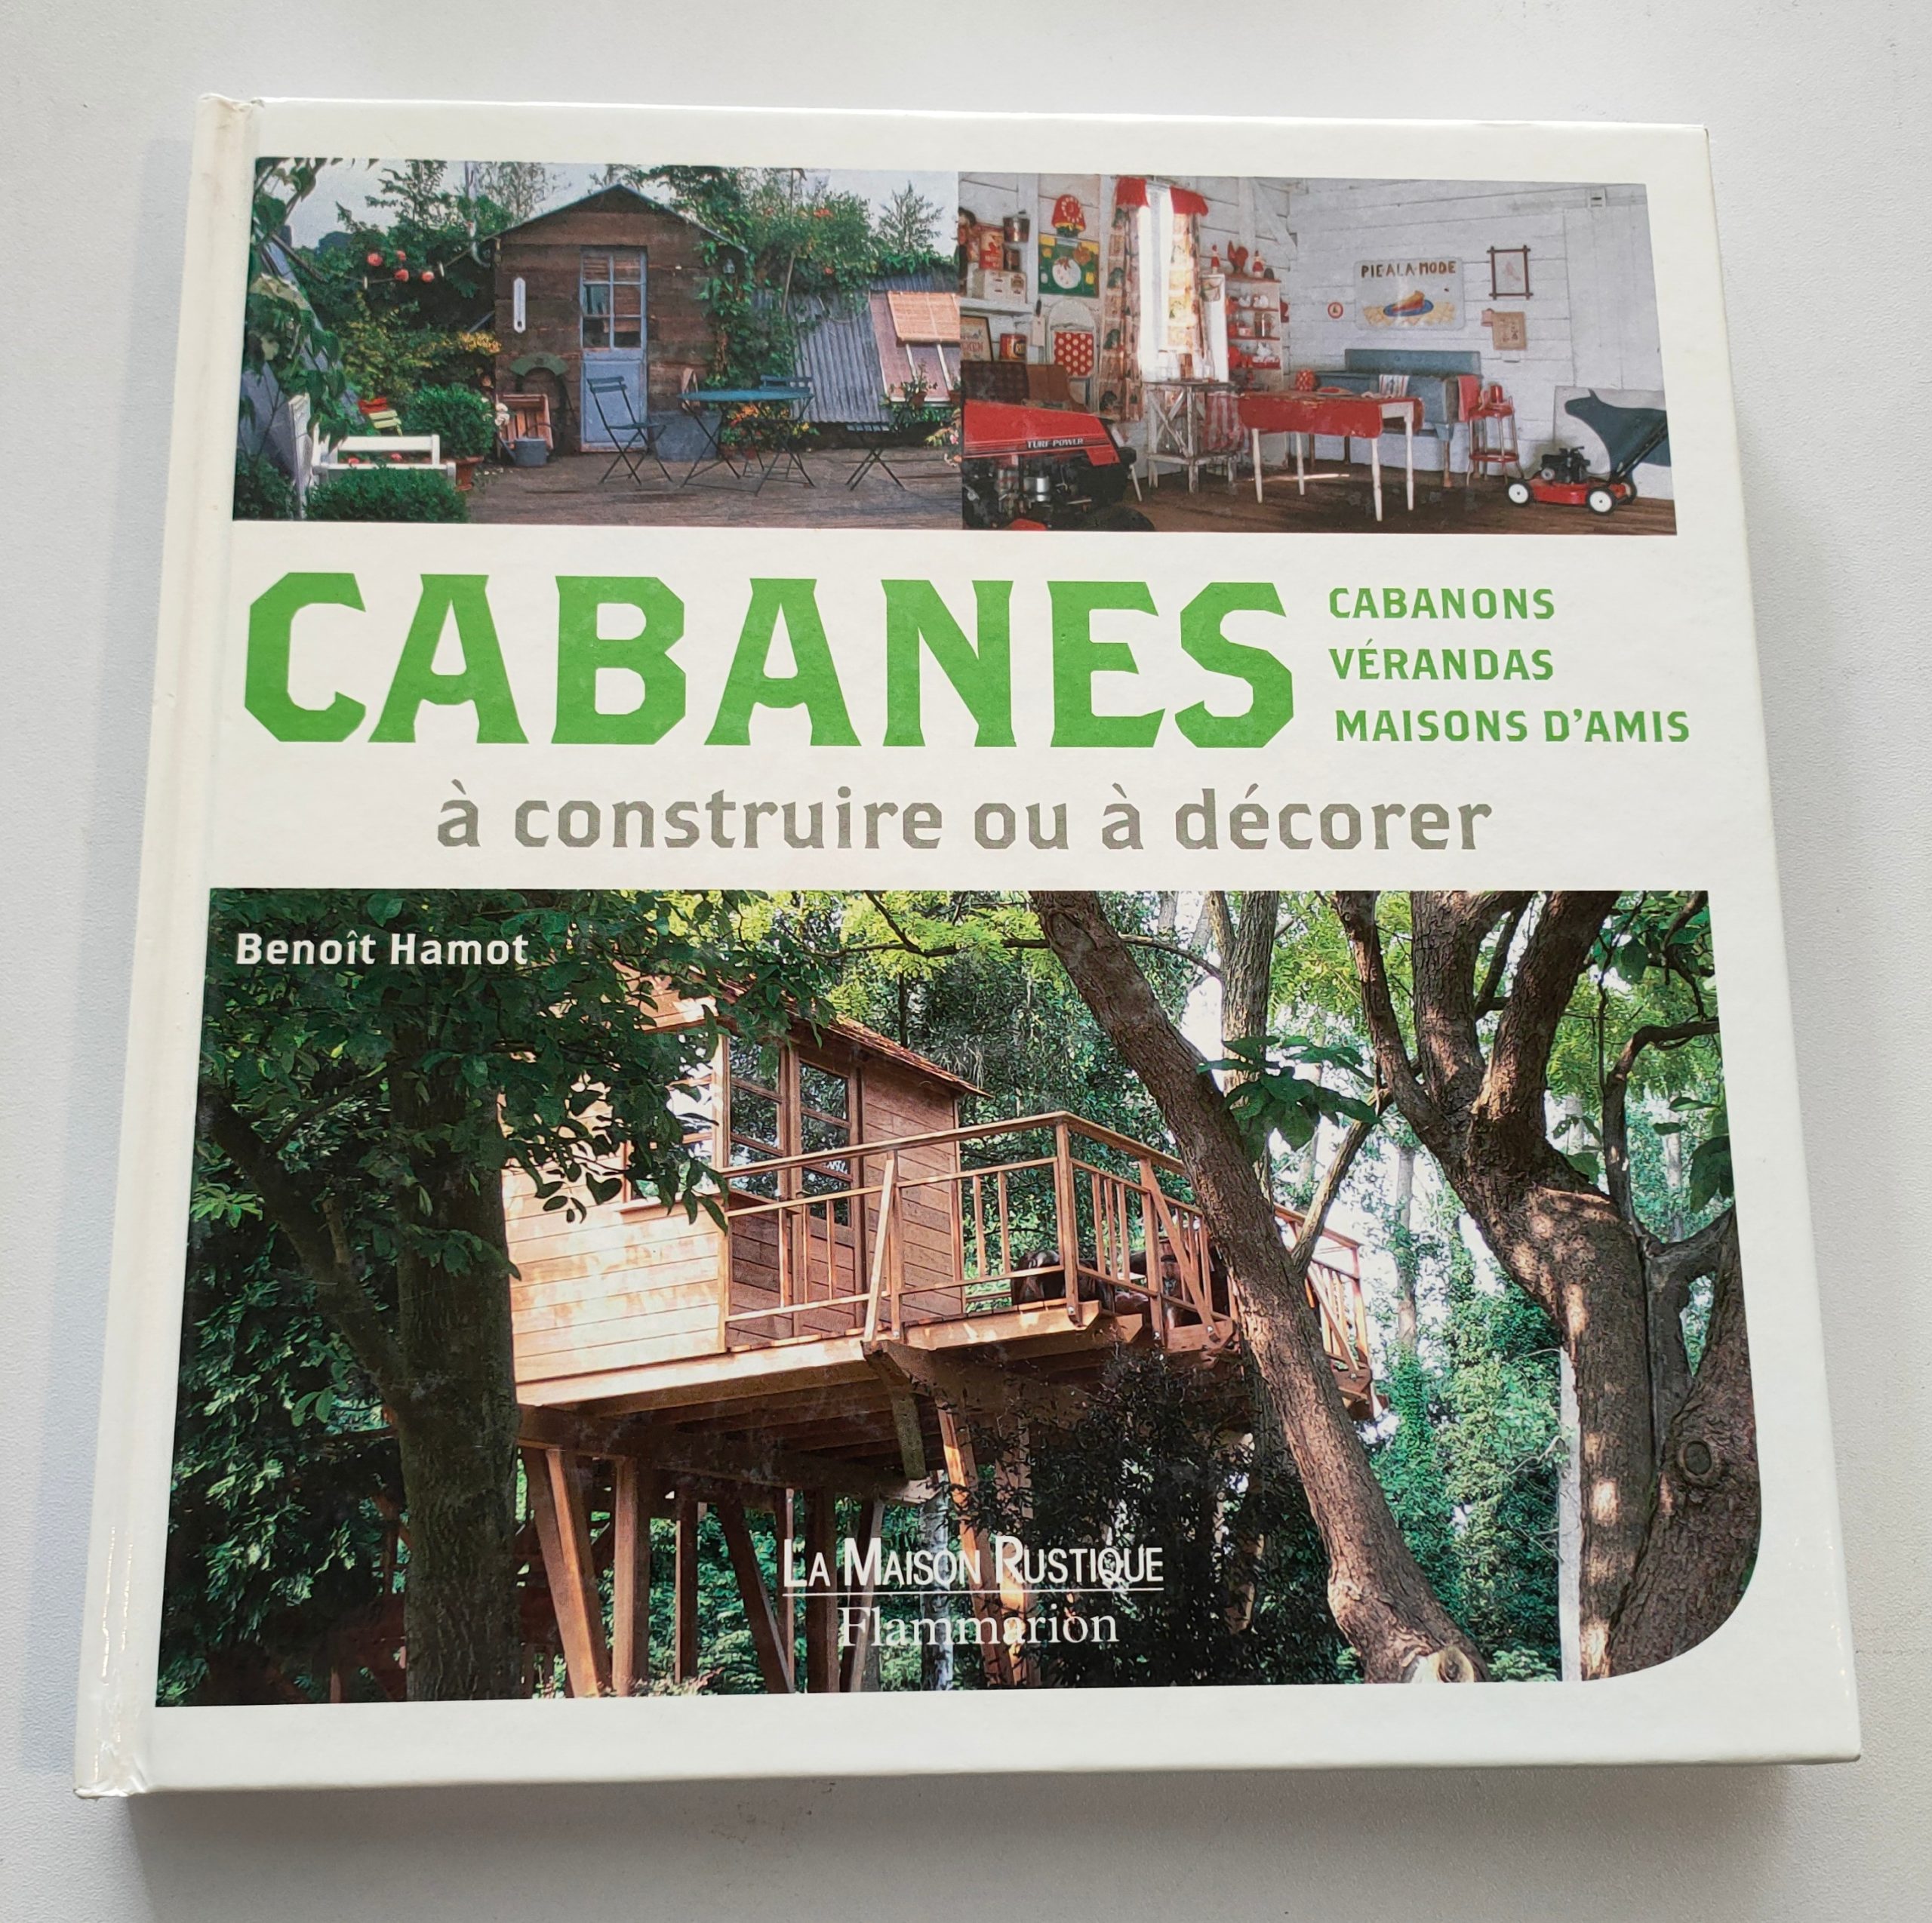 Featured image for “Cabanes, cabanons, vérandas, maisons d'amis à construire ou à décorer / 2010”